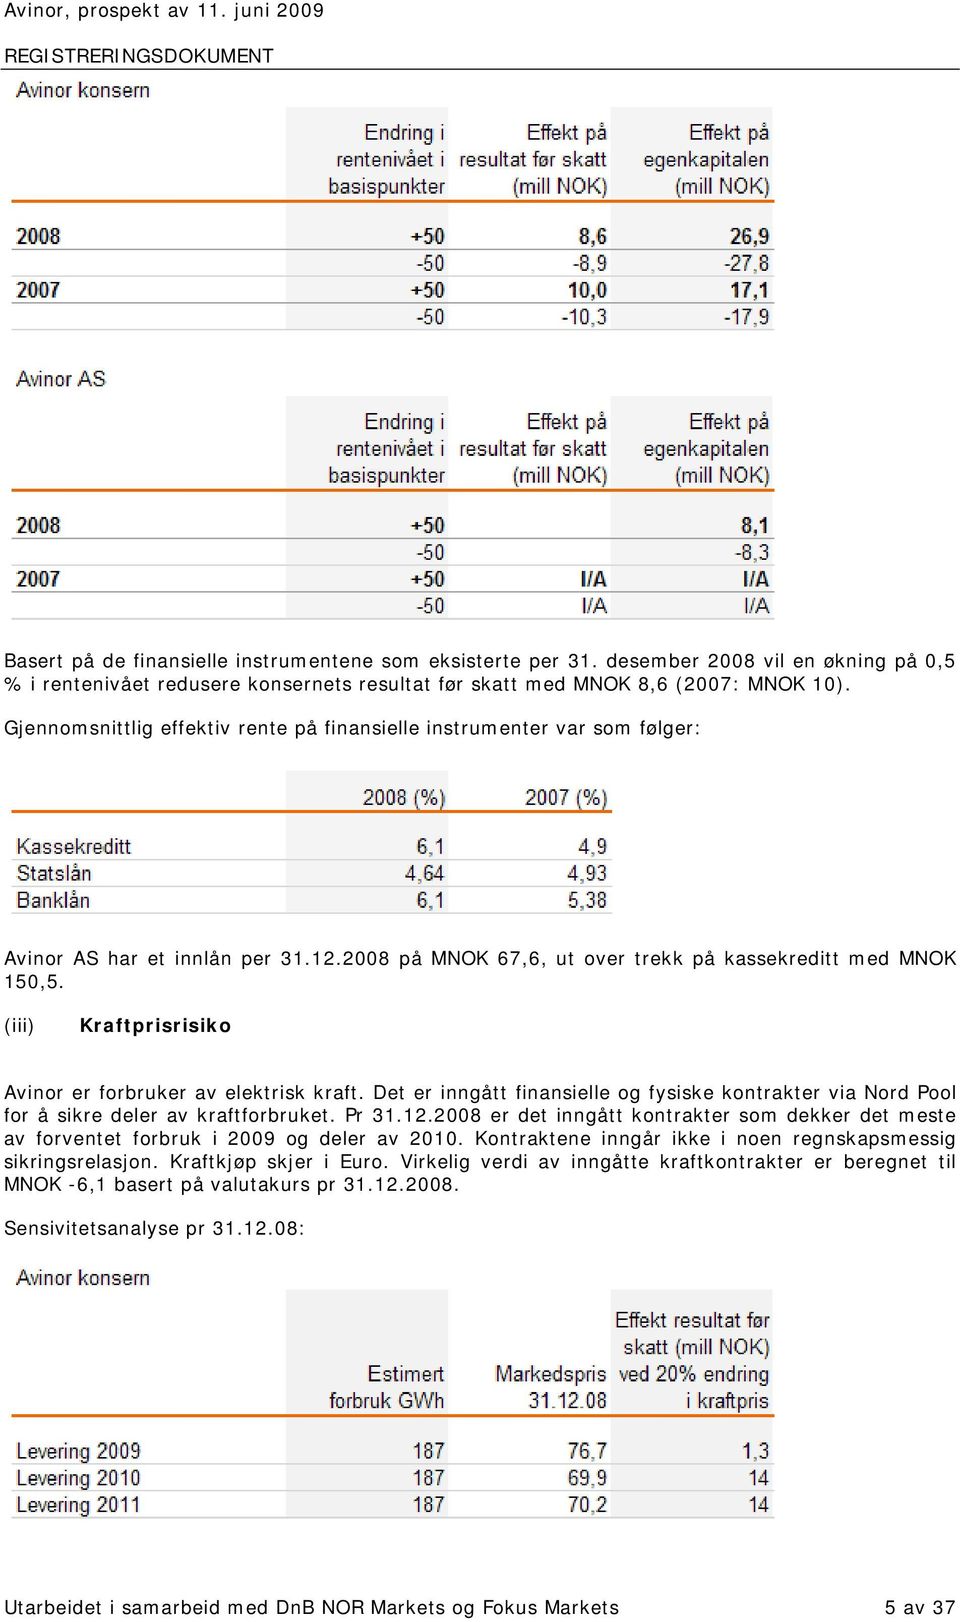 Gjennomsnittlig effektiv rente på finansielle instrumenter var som følger: Avinor AS har et innlån per 31.12.2008 på MNOK 67,6, ut over trekk på kassekreditt med MNOK 150,5.